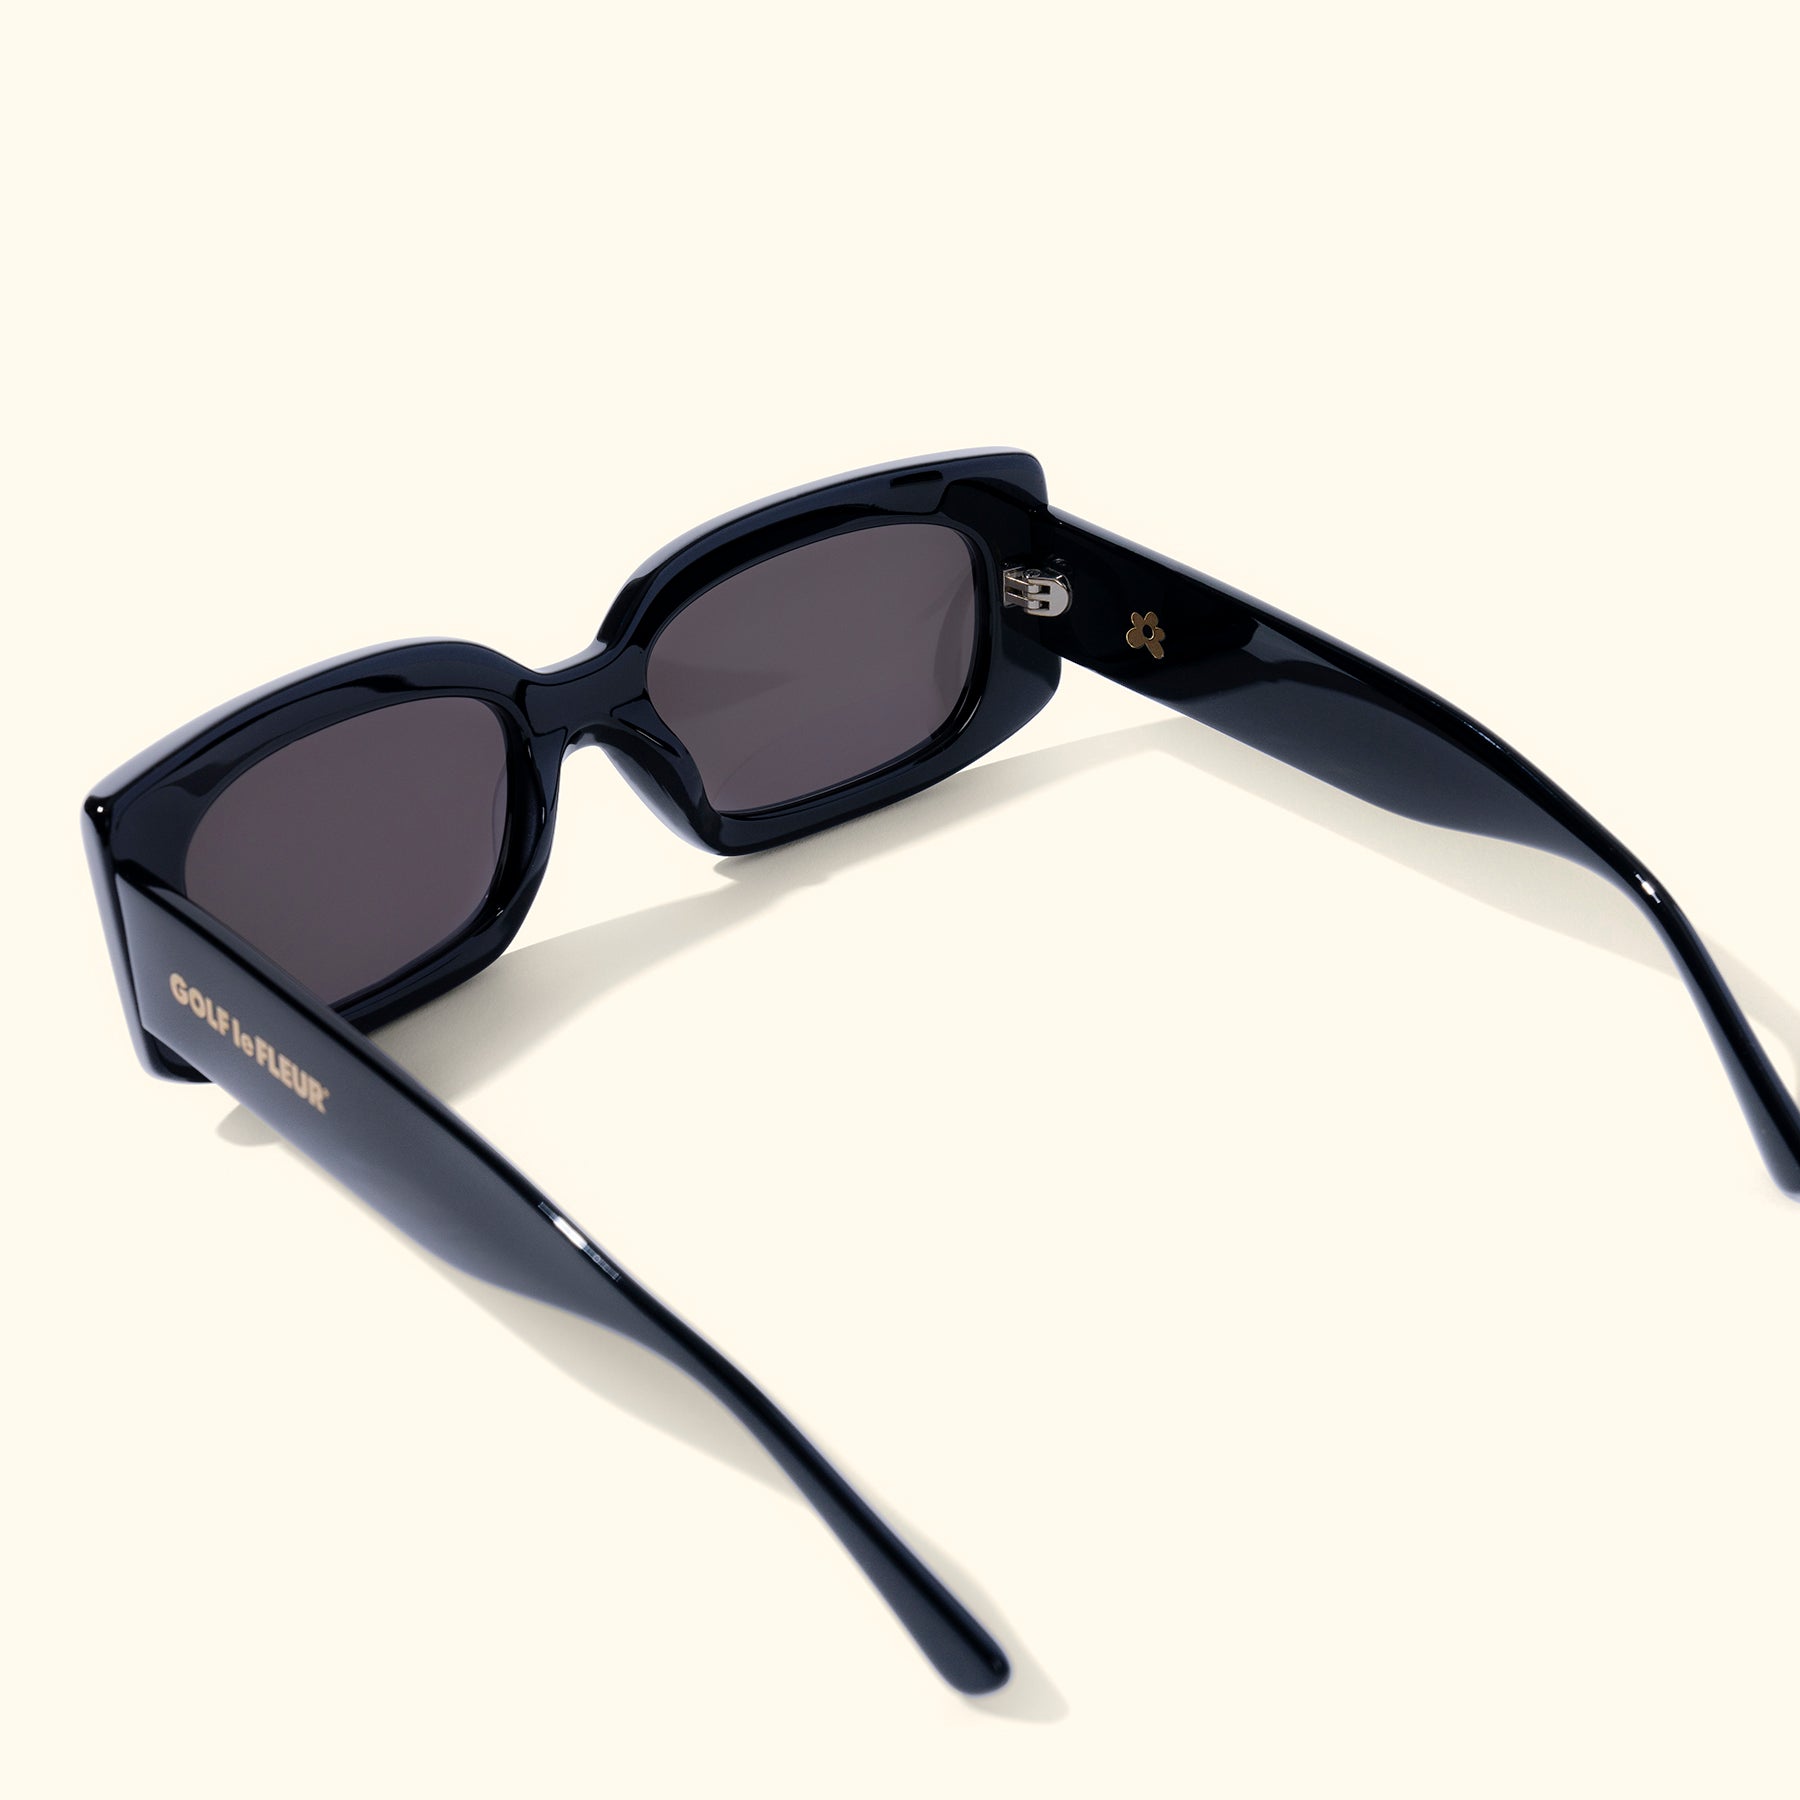 Sunseeker Sunglasses Black